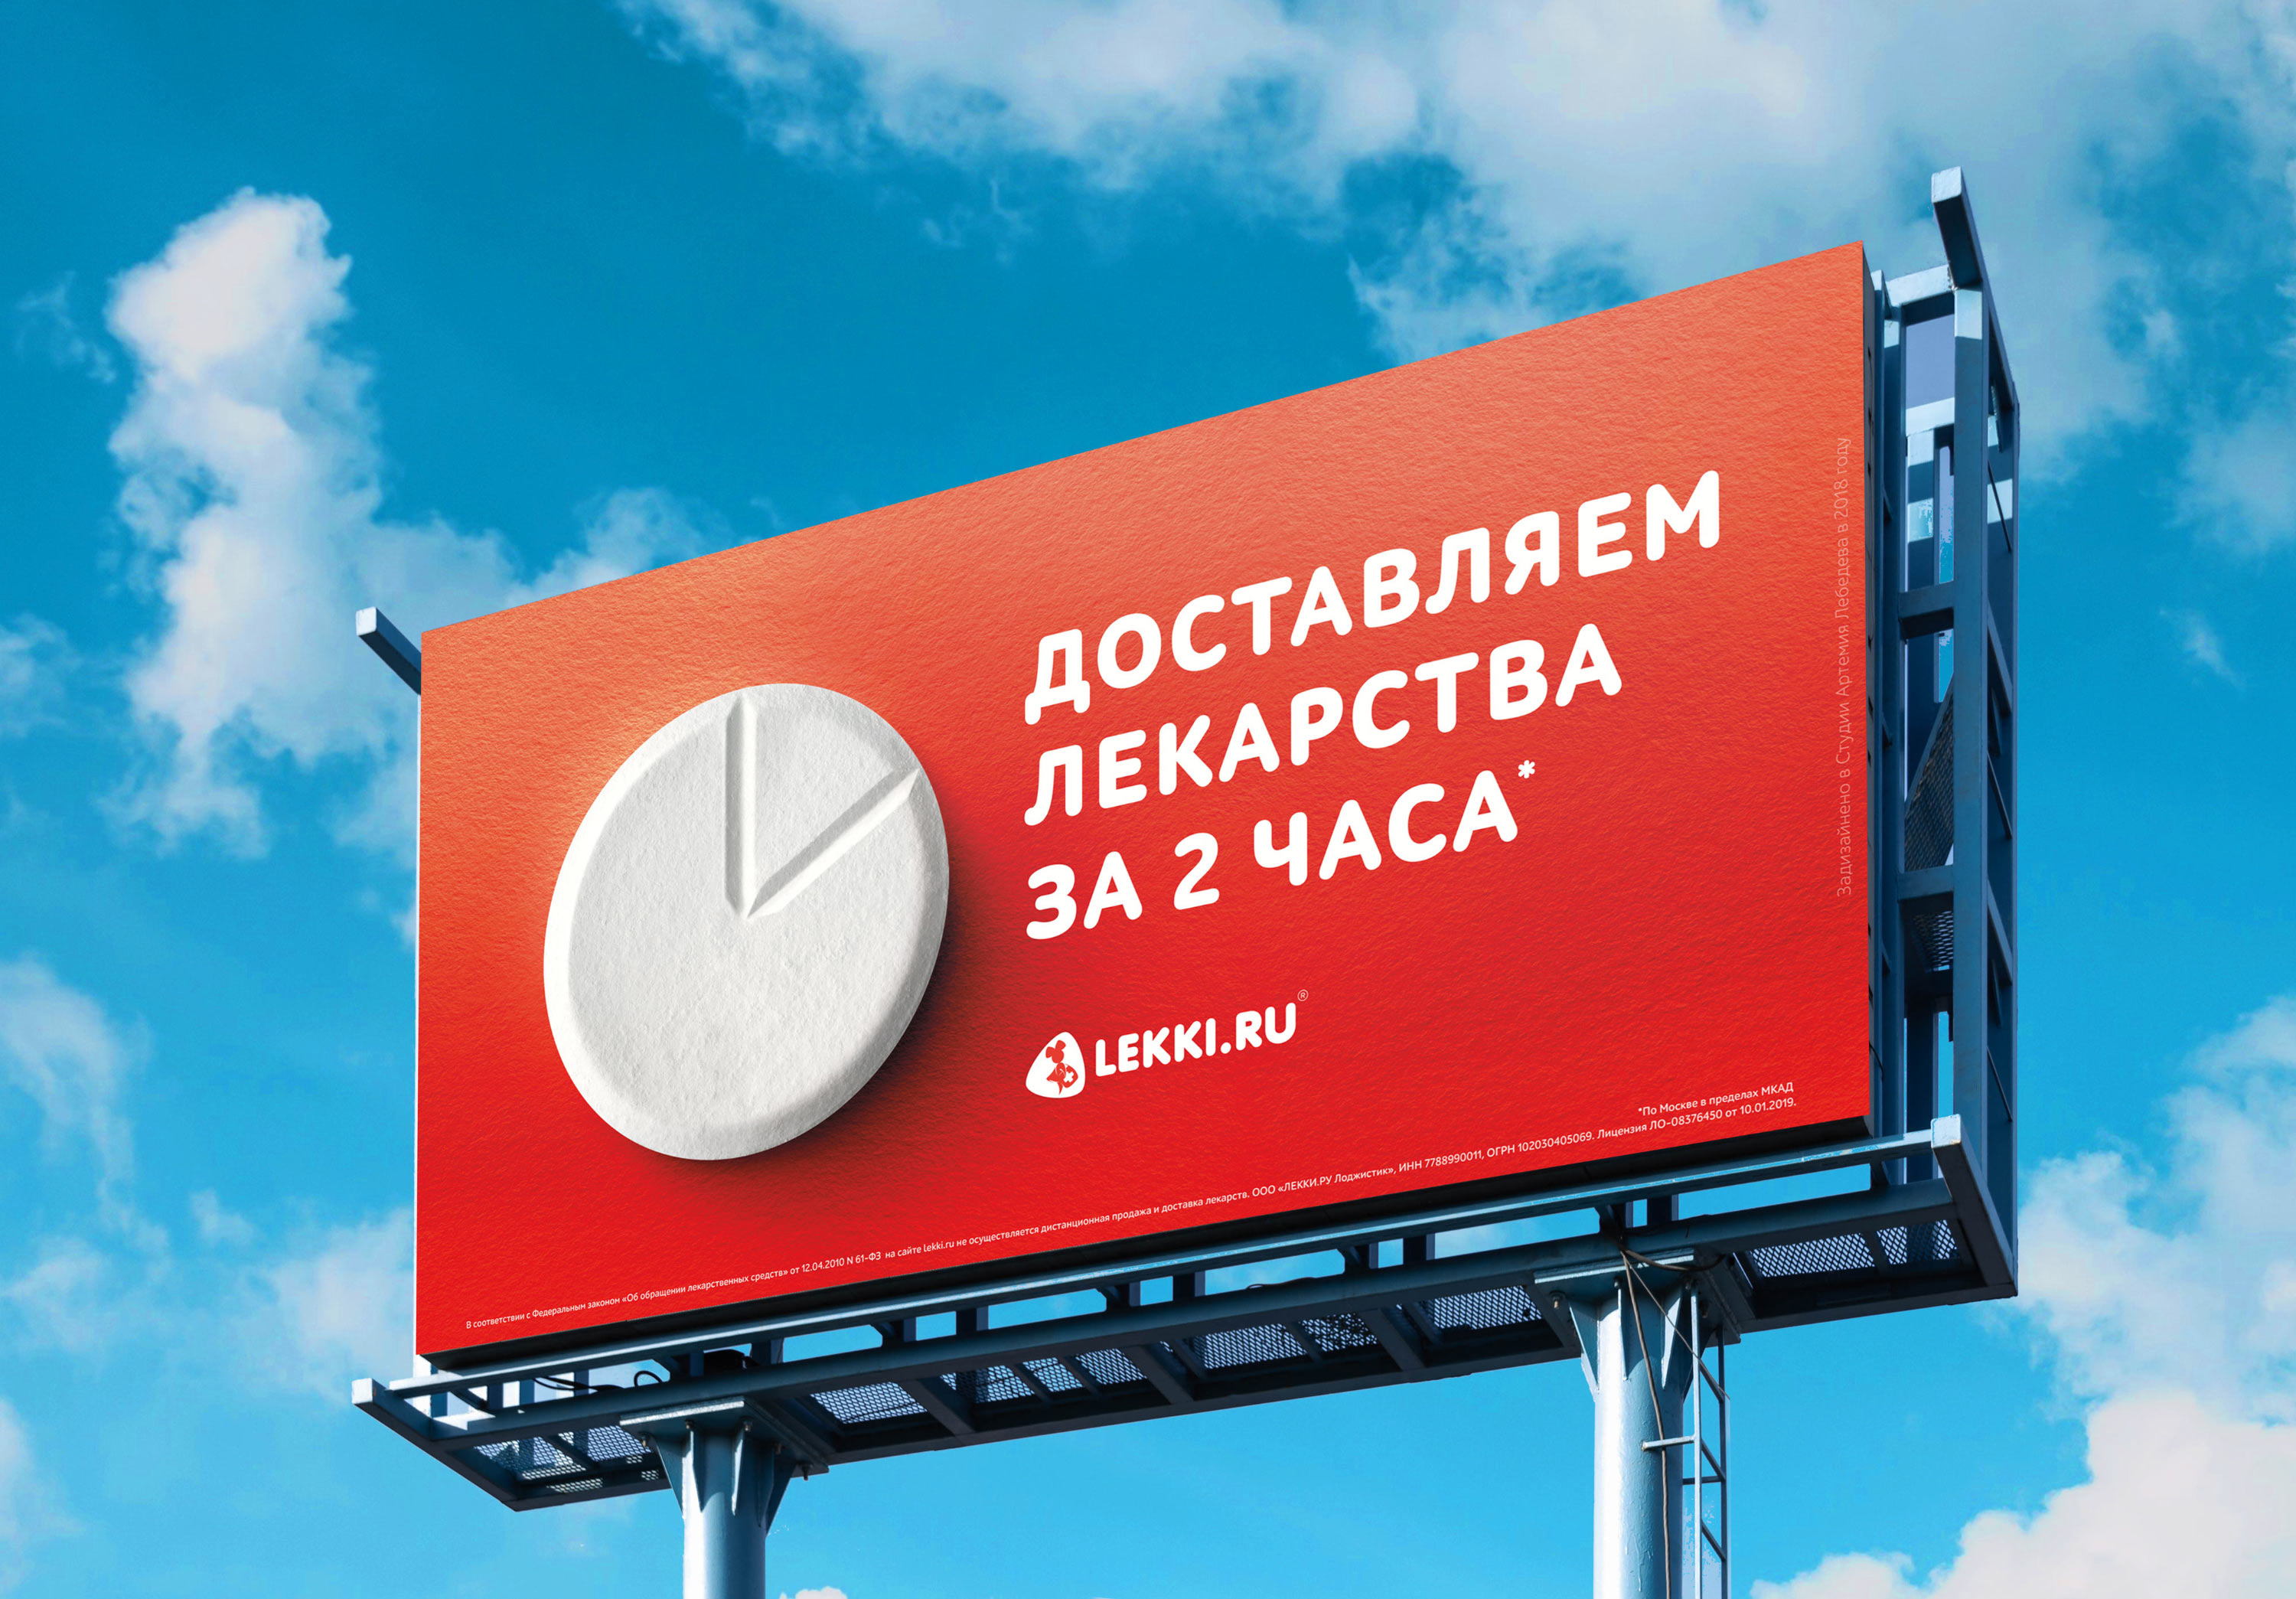 Студия Артемия Лебедева, Наружная реклама, «Лекки.ру»